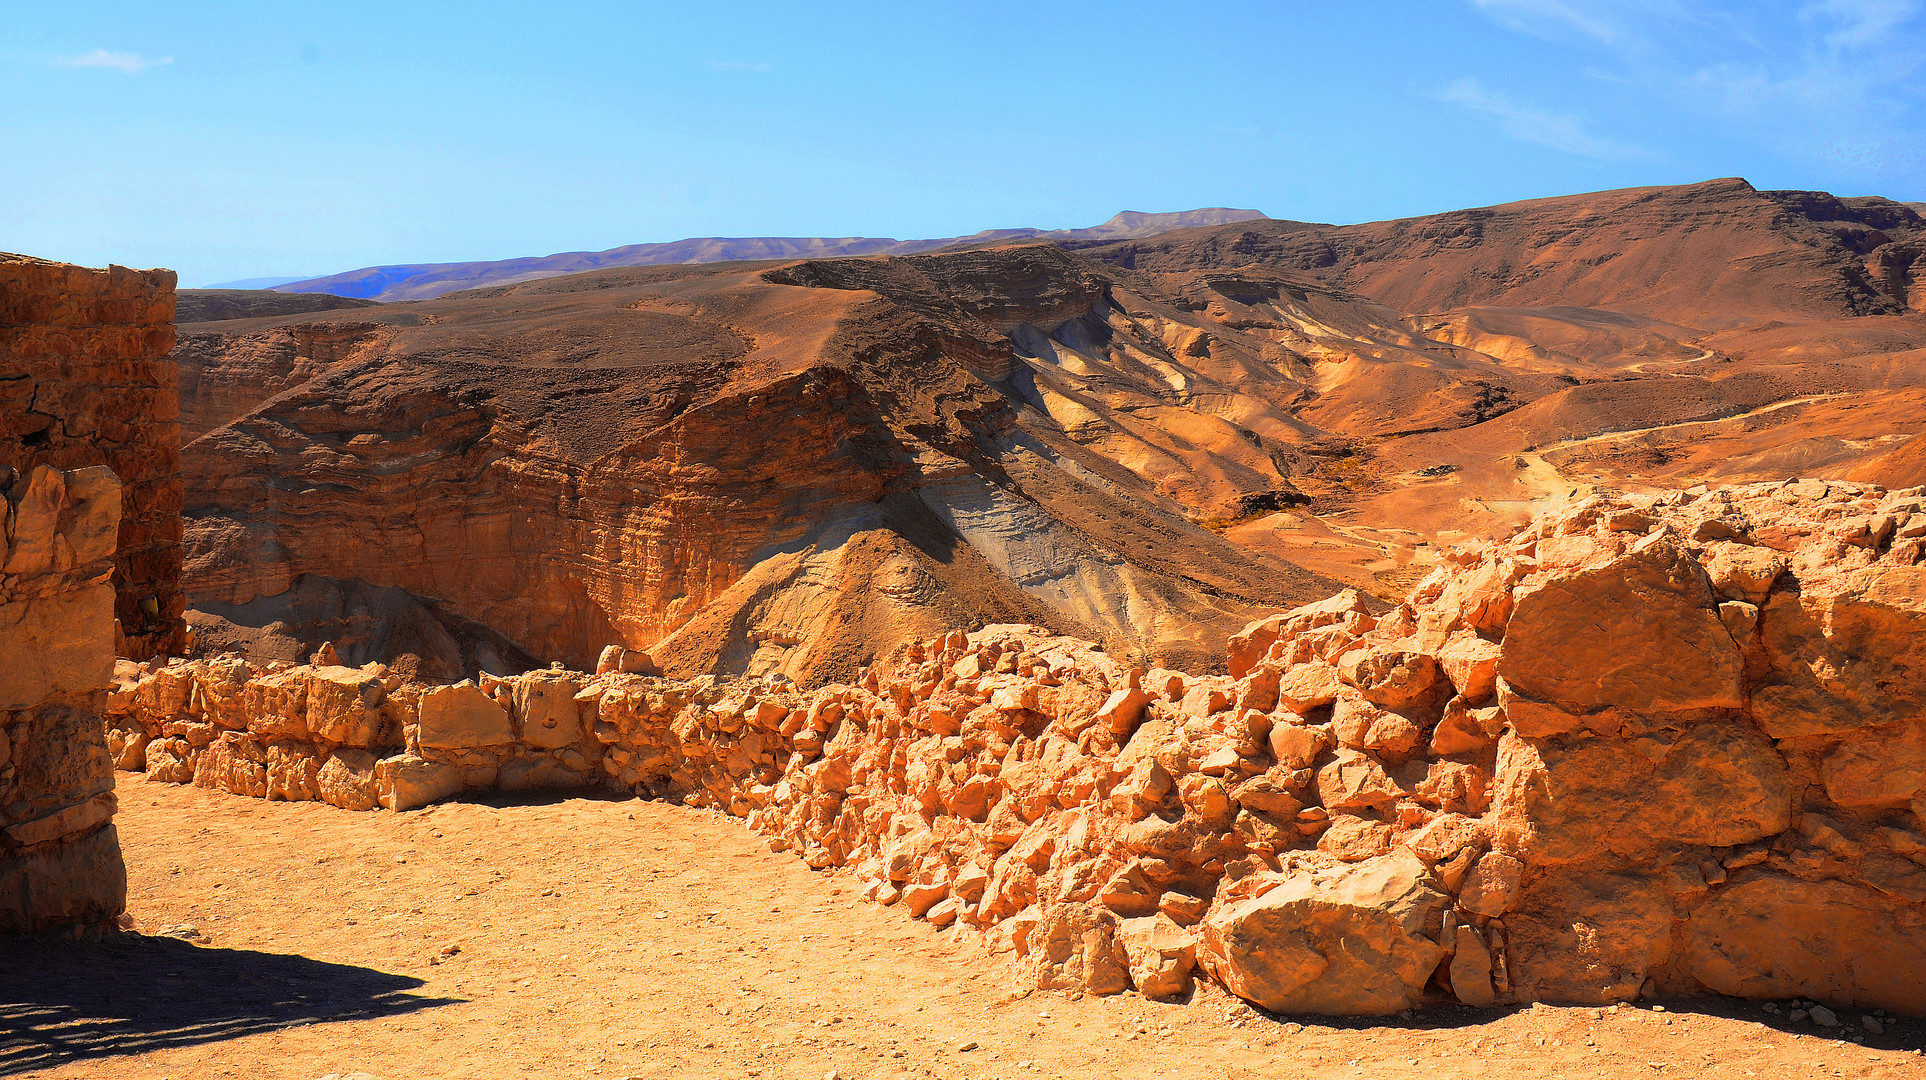 Judäische Wüste mit Ruinen der Festung Massada, der alten Fluchtburg des Herodes und seiner Familie